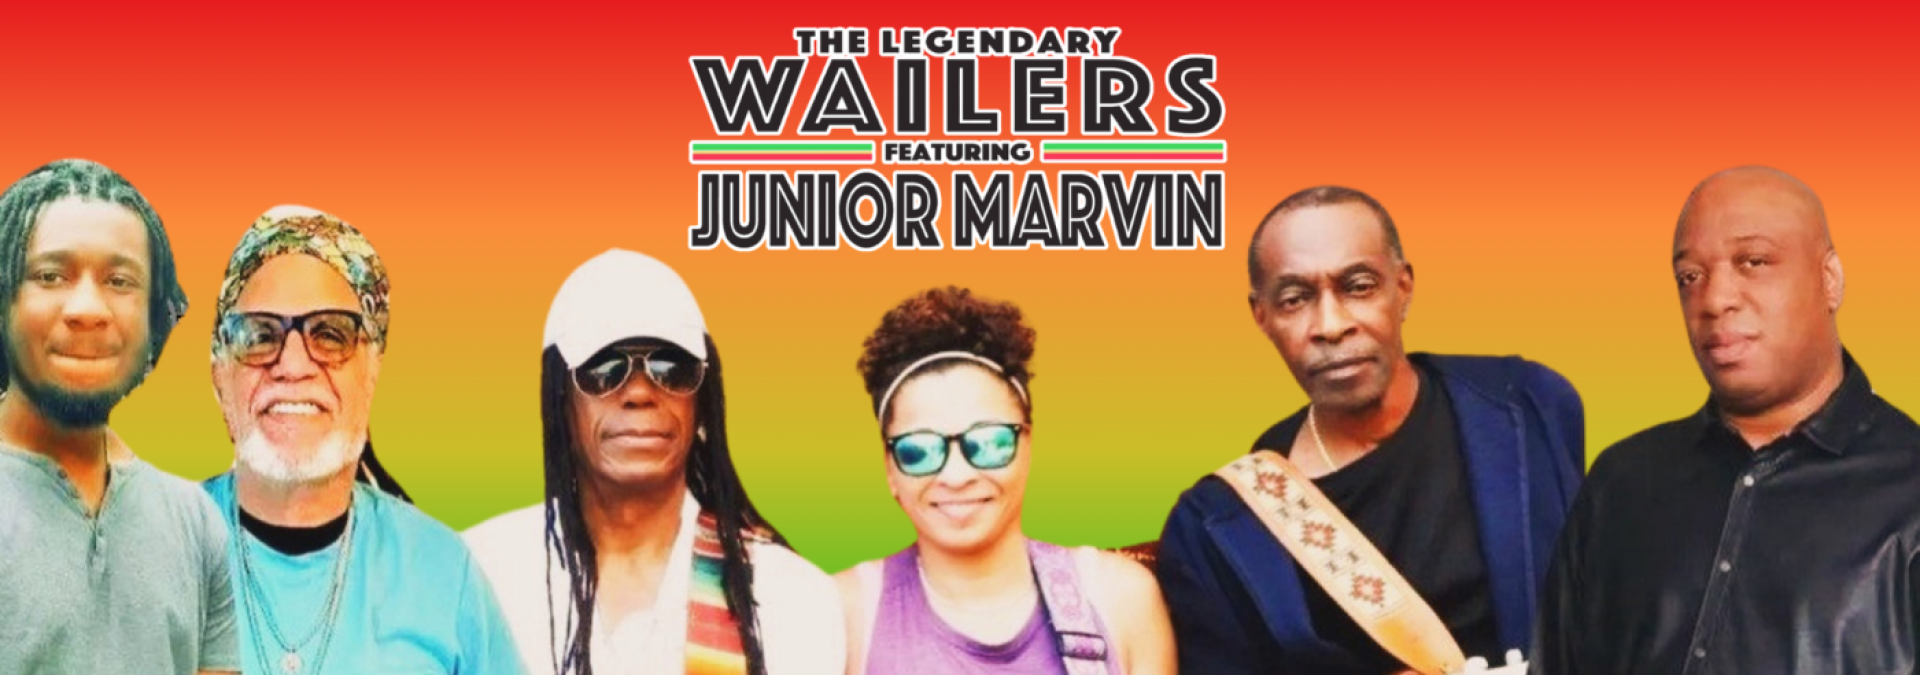 Wailers Website banner 3